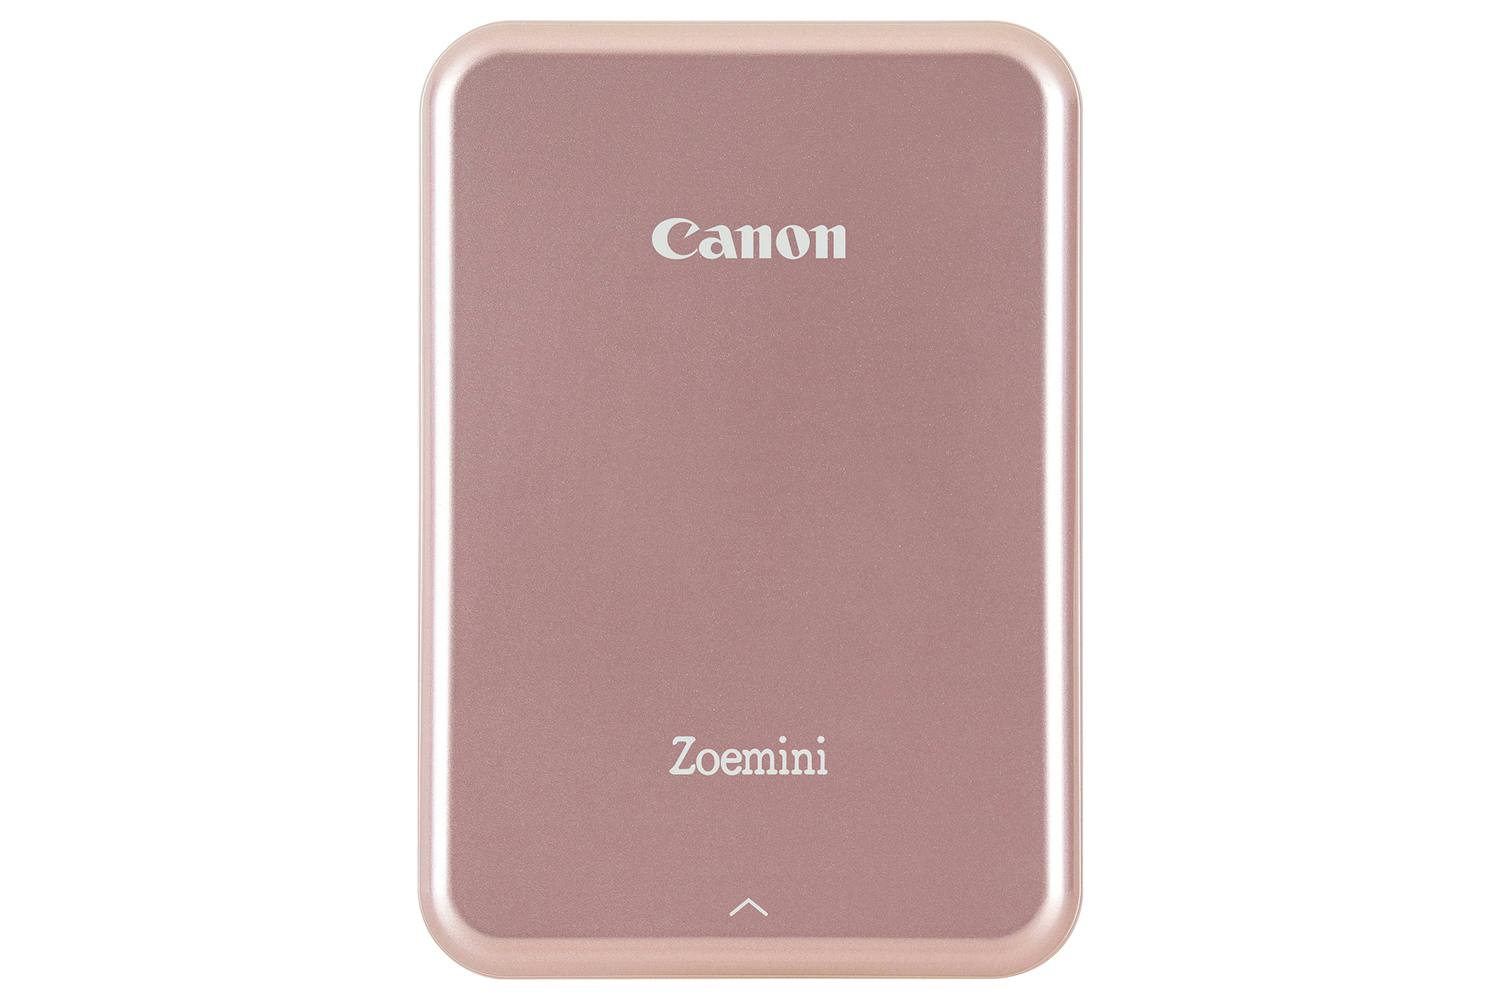 Canon Zoemini Portable Photo Printer, Rose Gold